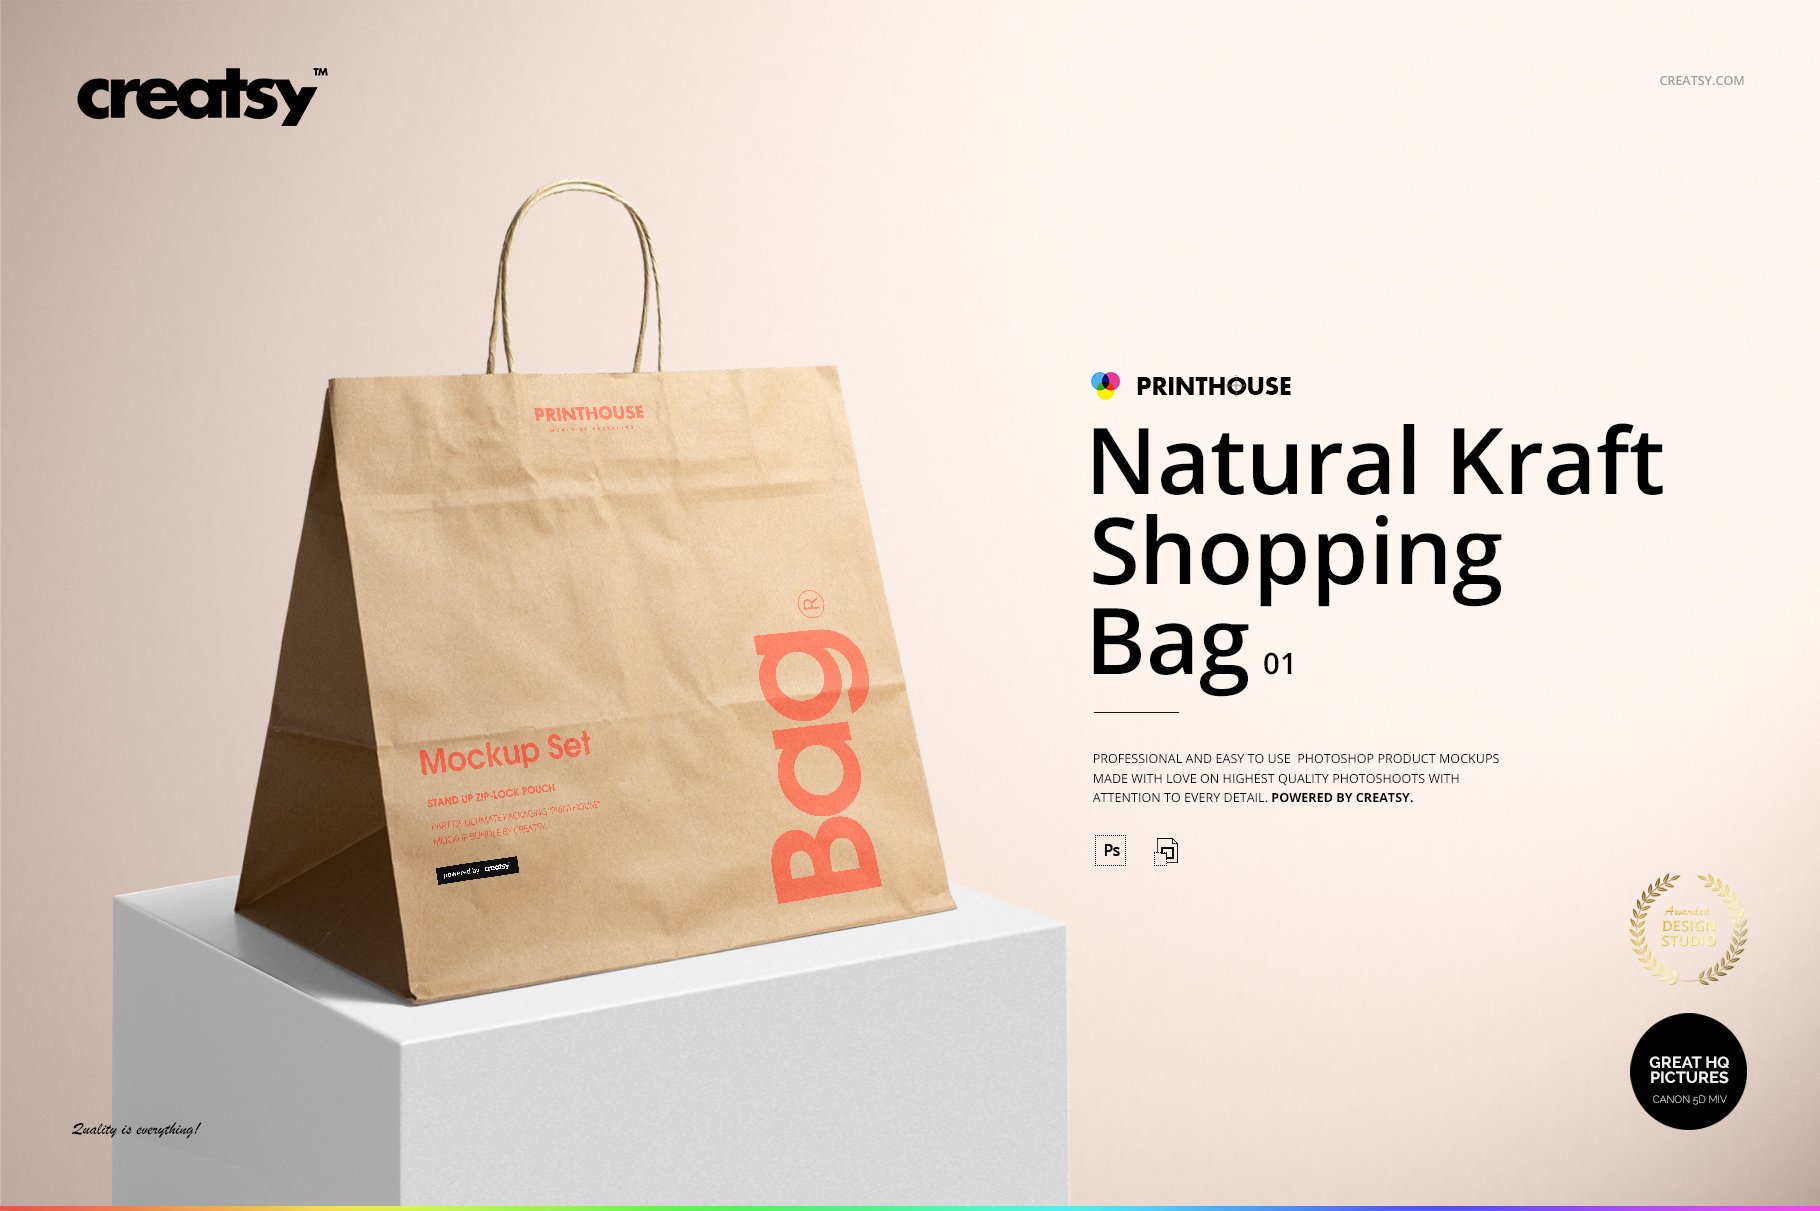 Natural Kraft Shopping Bag 1 Mockup cover image.